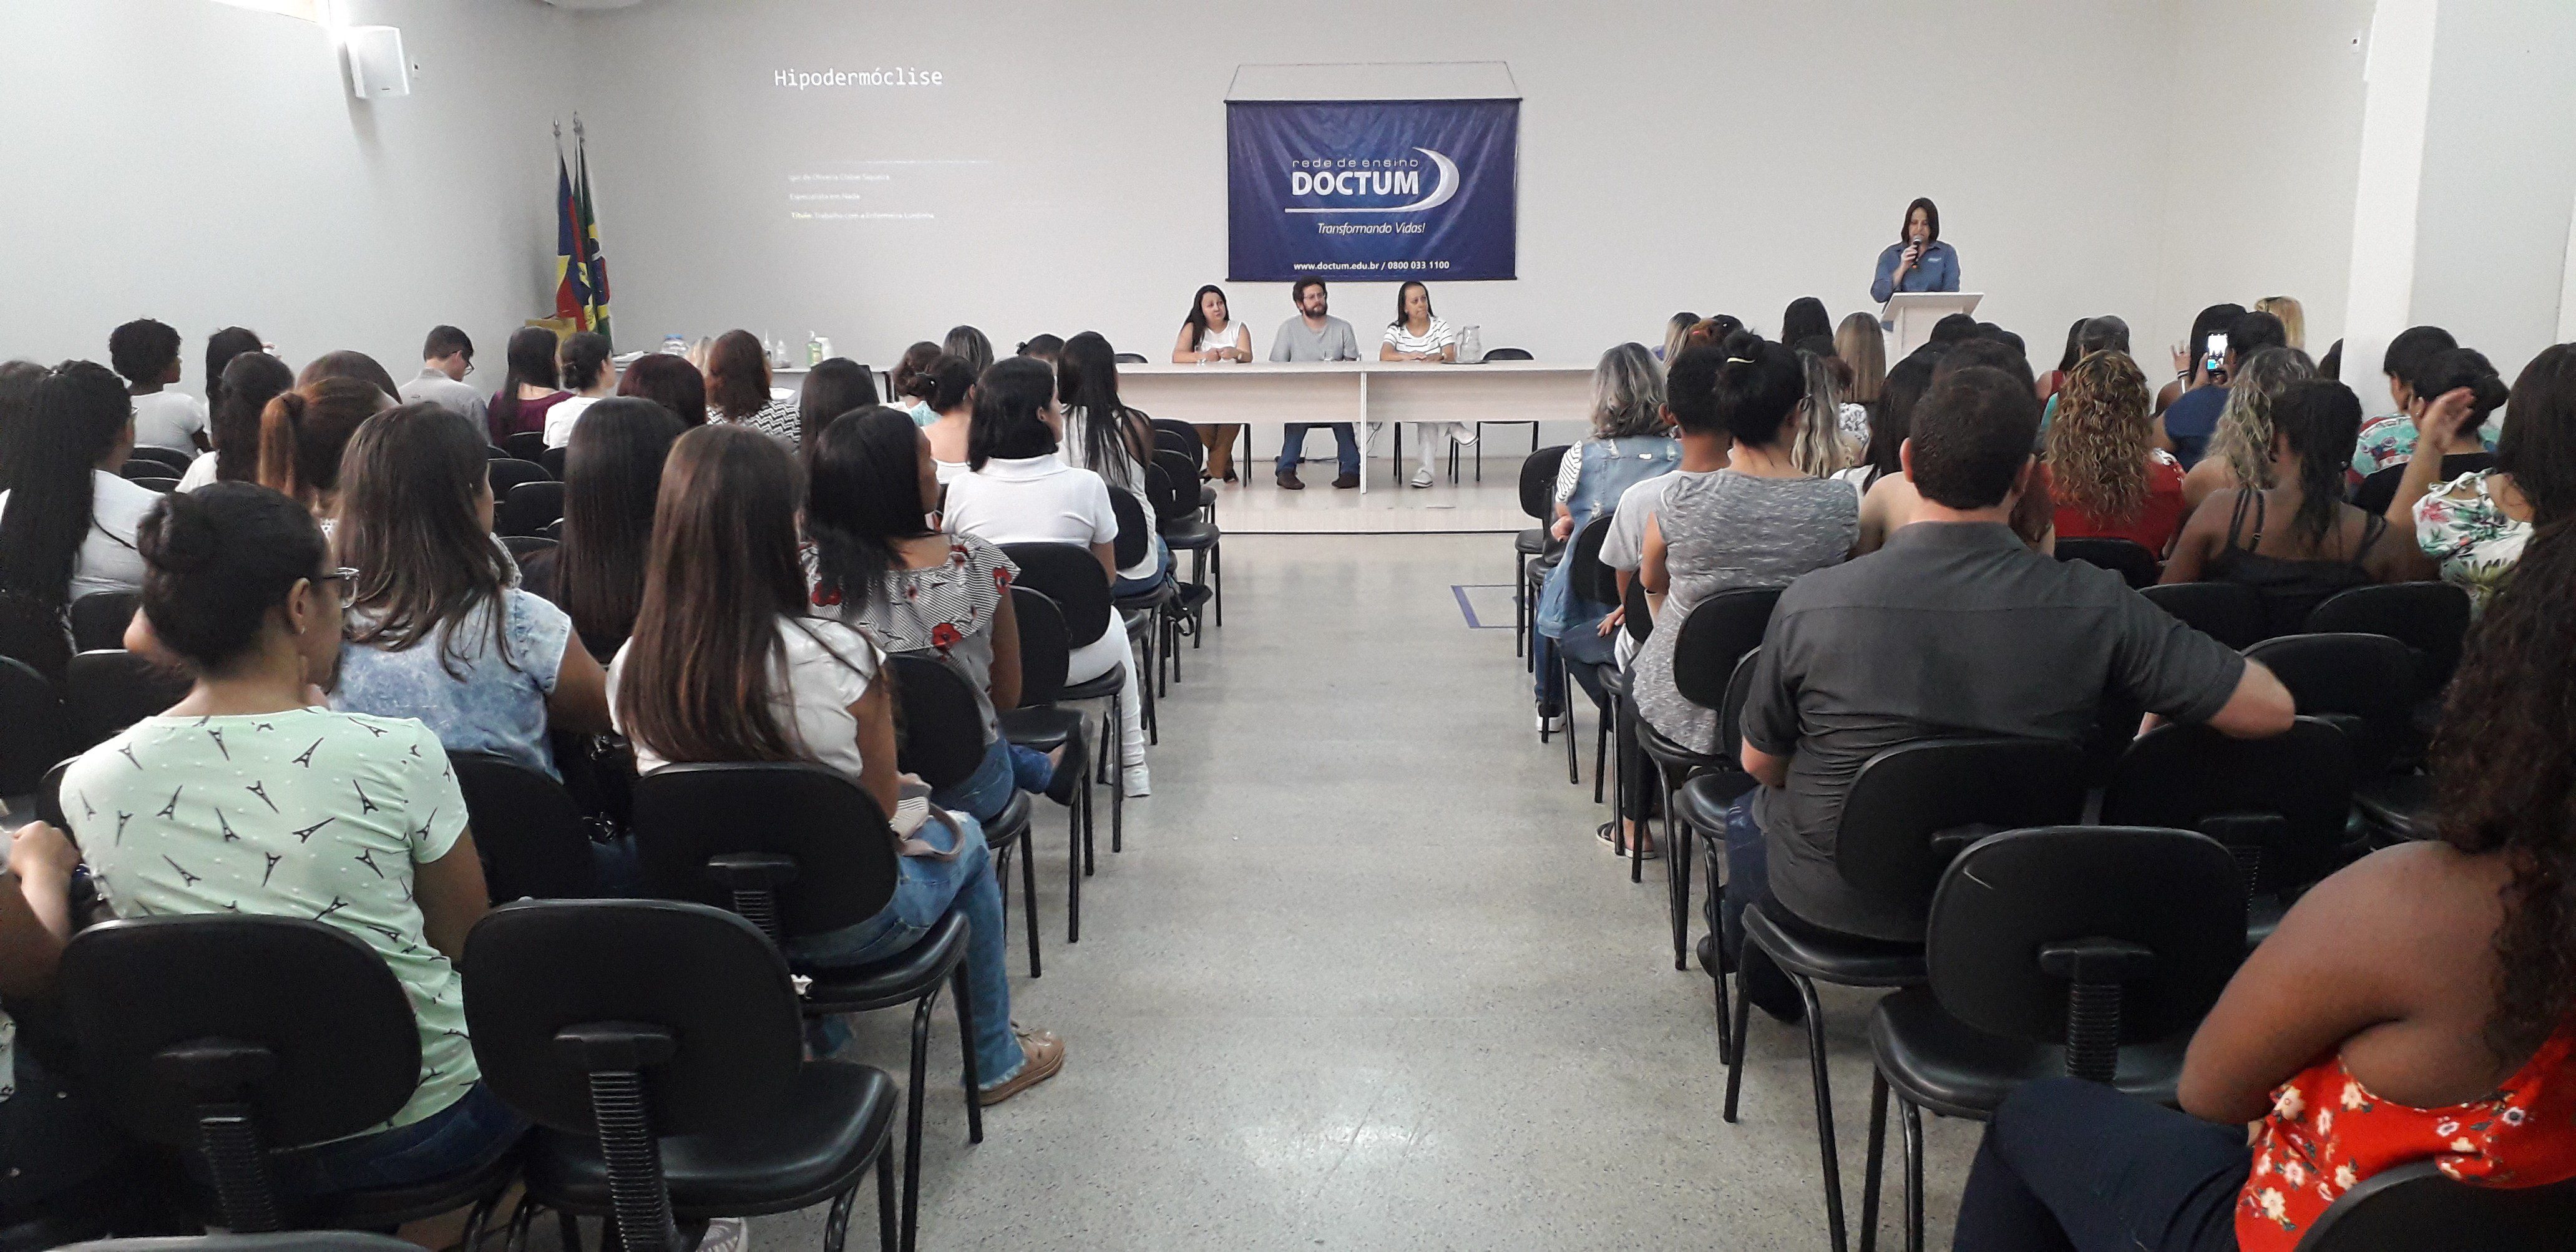 Colégio Caratinga da Doctum promove curso para profissionais da saúde